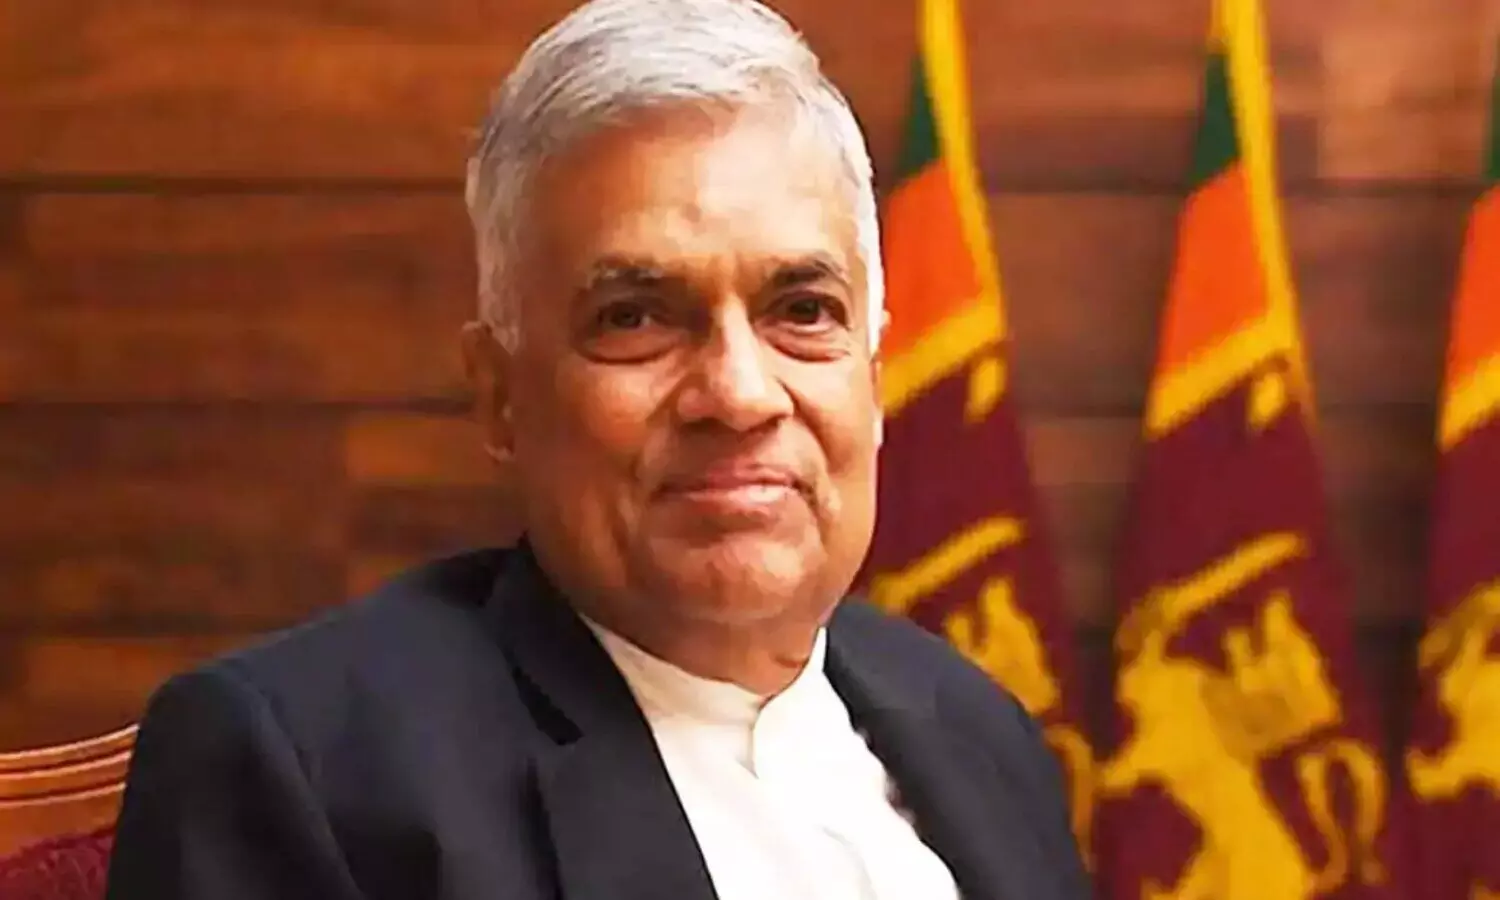 Sri Lanka New PM